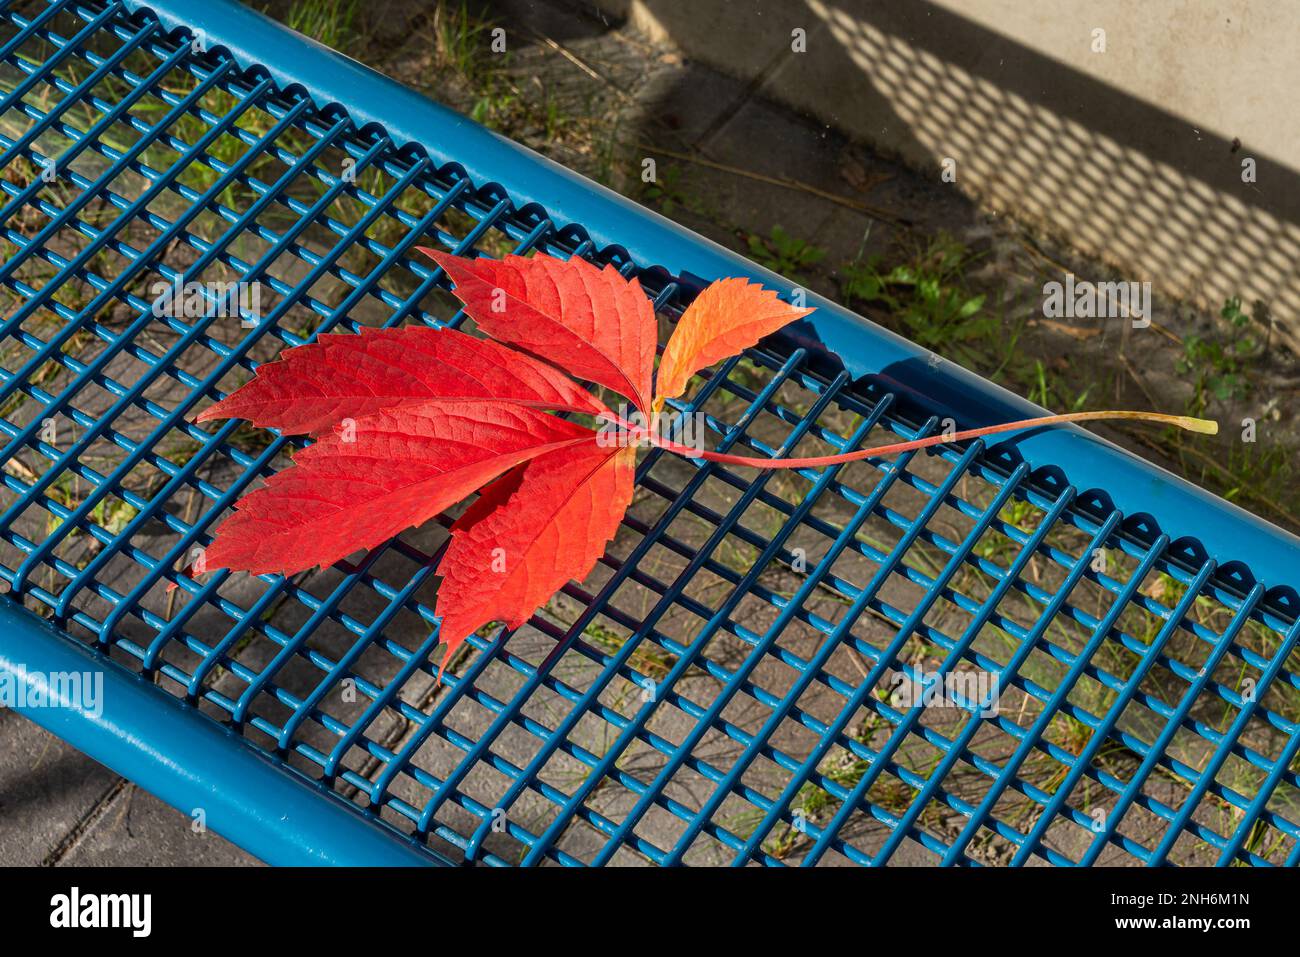 Rotes Blatt schleichender wilder parthenocissus auf einer Metallbank. Farbenfrohe lila-gelbe fünfblättrige Parthenociss im Herbst. Schließen. Stockfoto